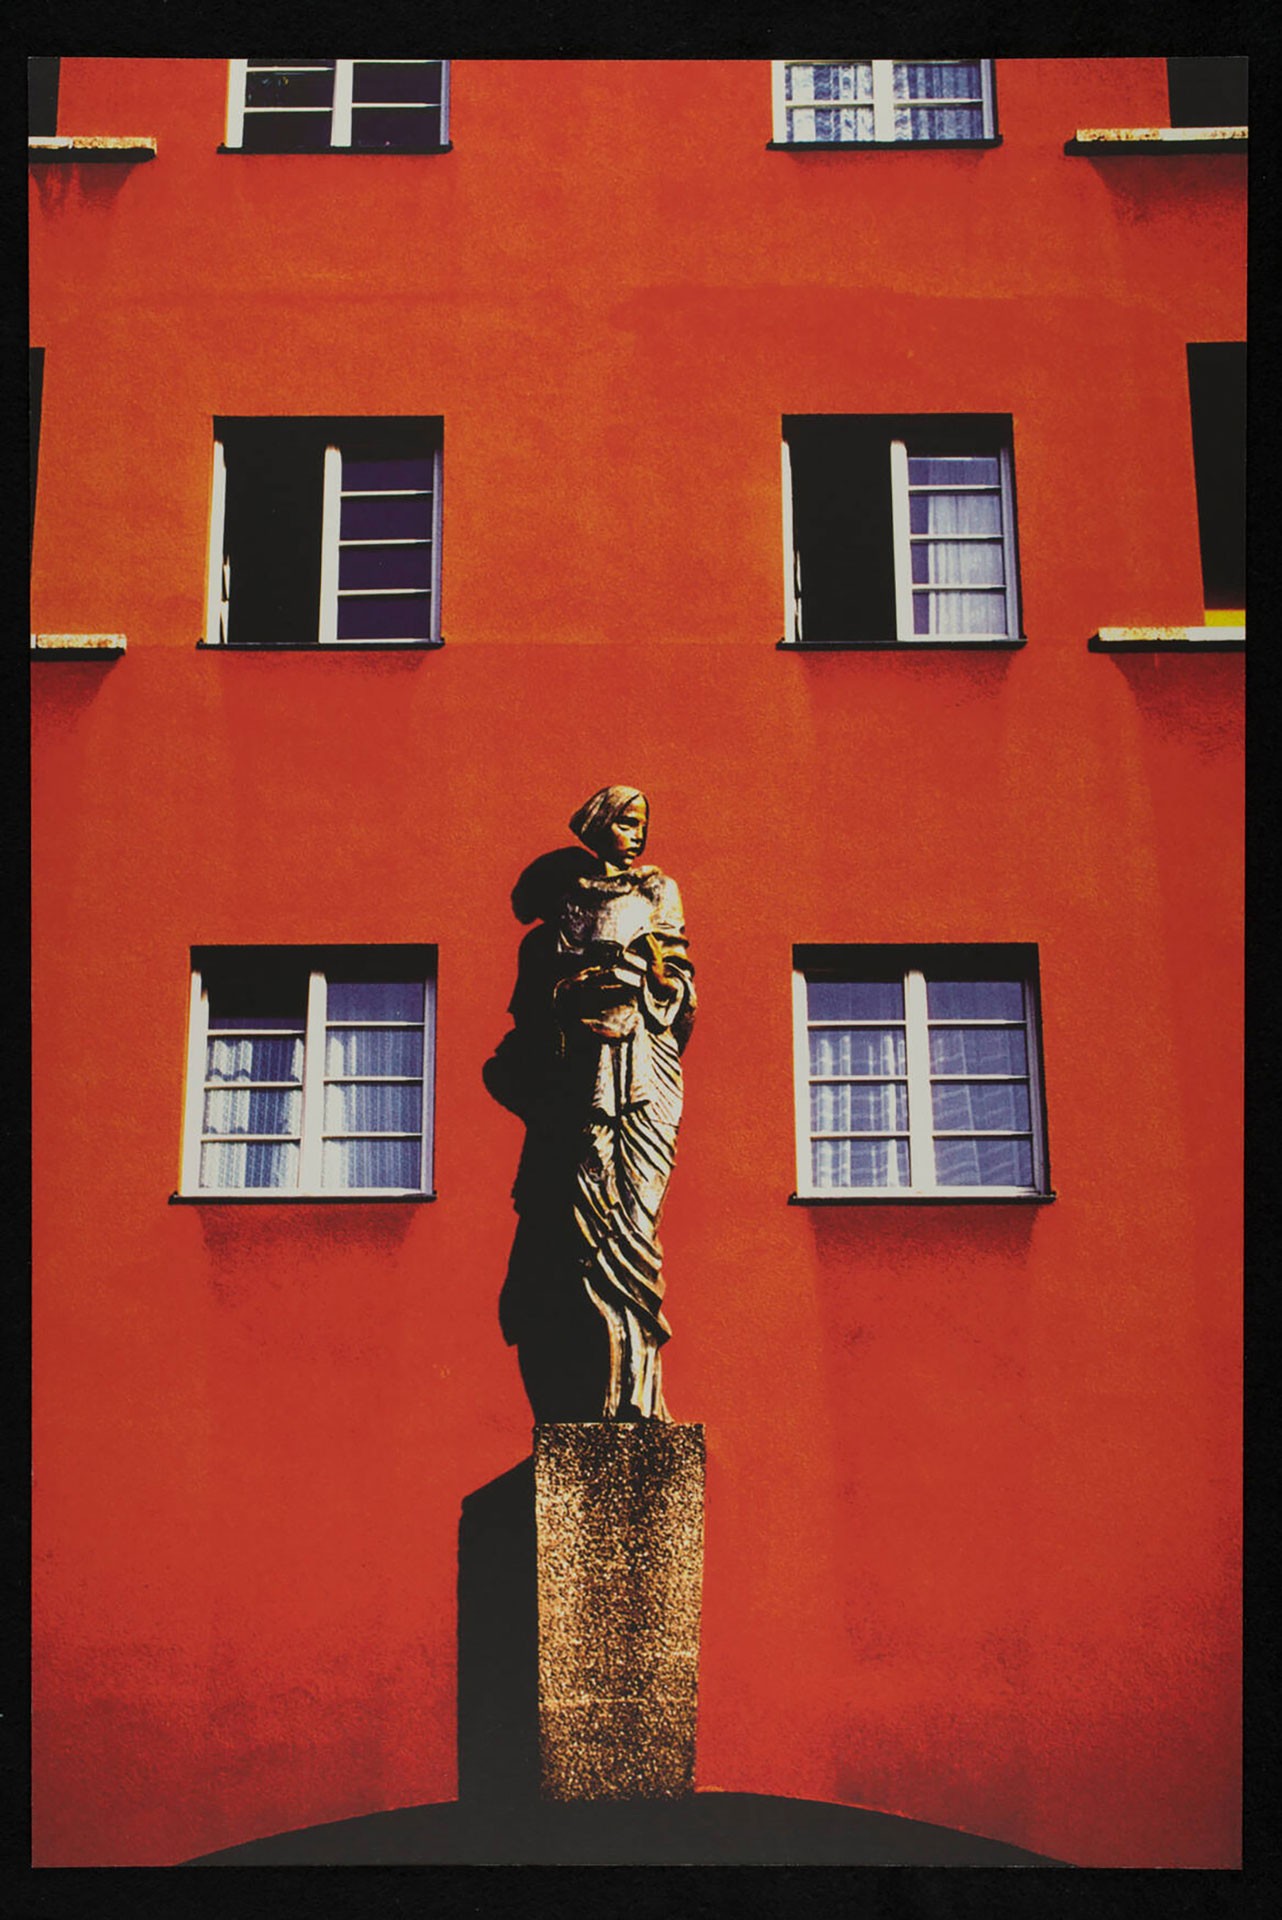 <BODY>Alfredo Jaar<br /><em>Untitled</em> (1988–2004)<br />Photo series on Red Vienna<br />© Alfredo Jaar<br /><br /></BODY>